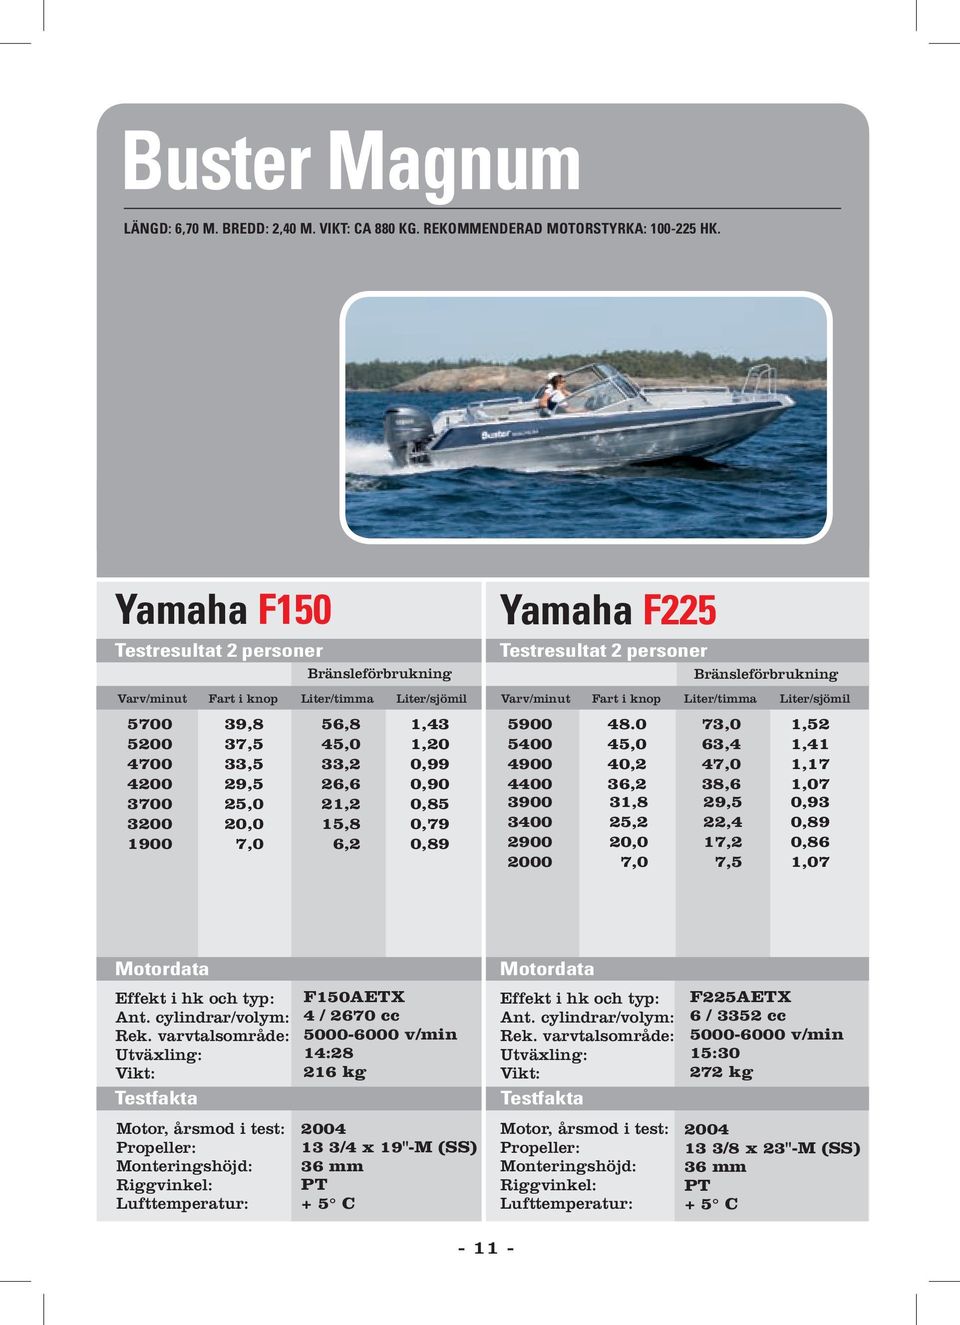 Yamaha F225 5900 3900 3400 2900 2000 48.